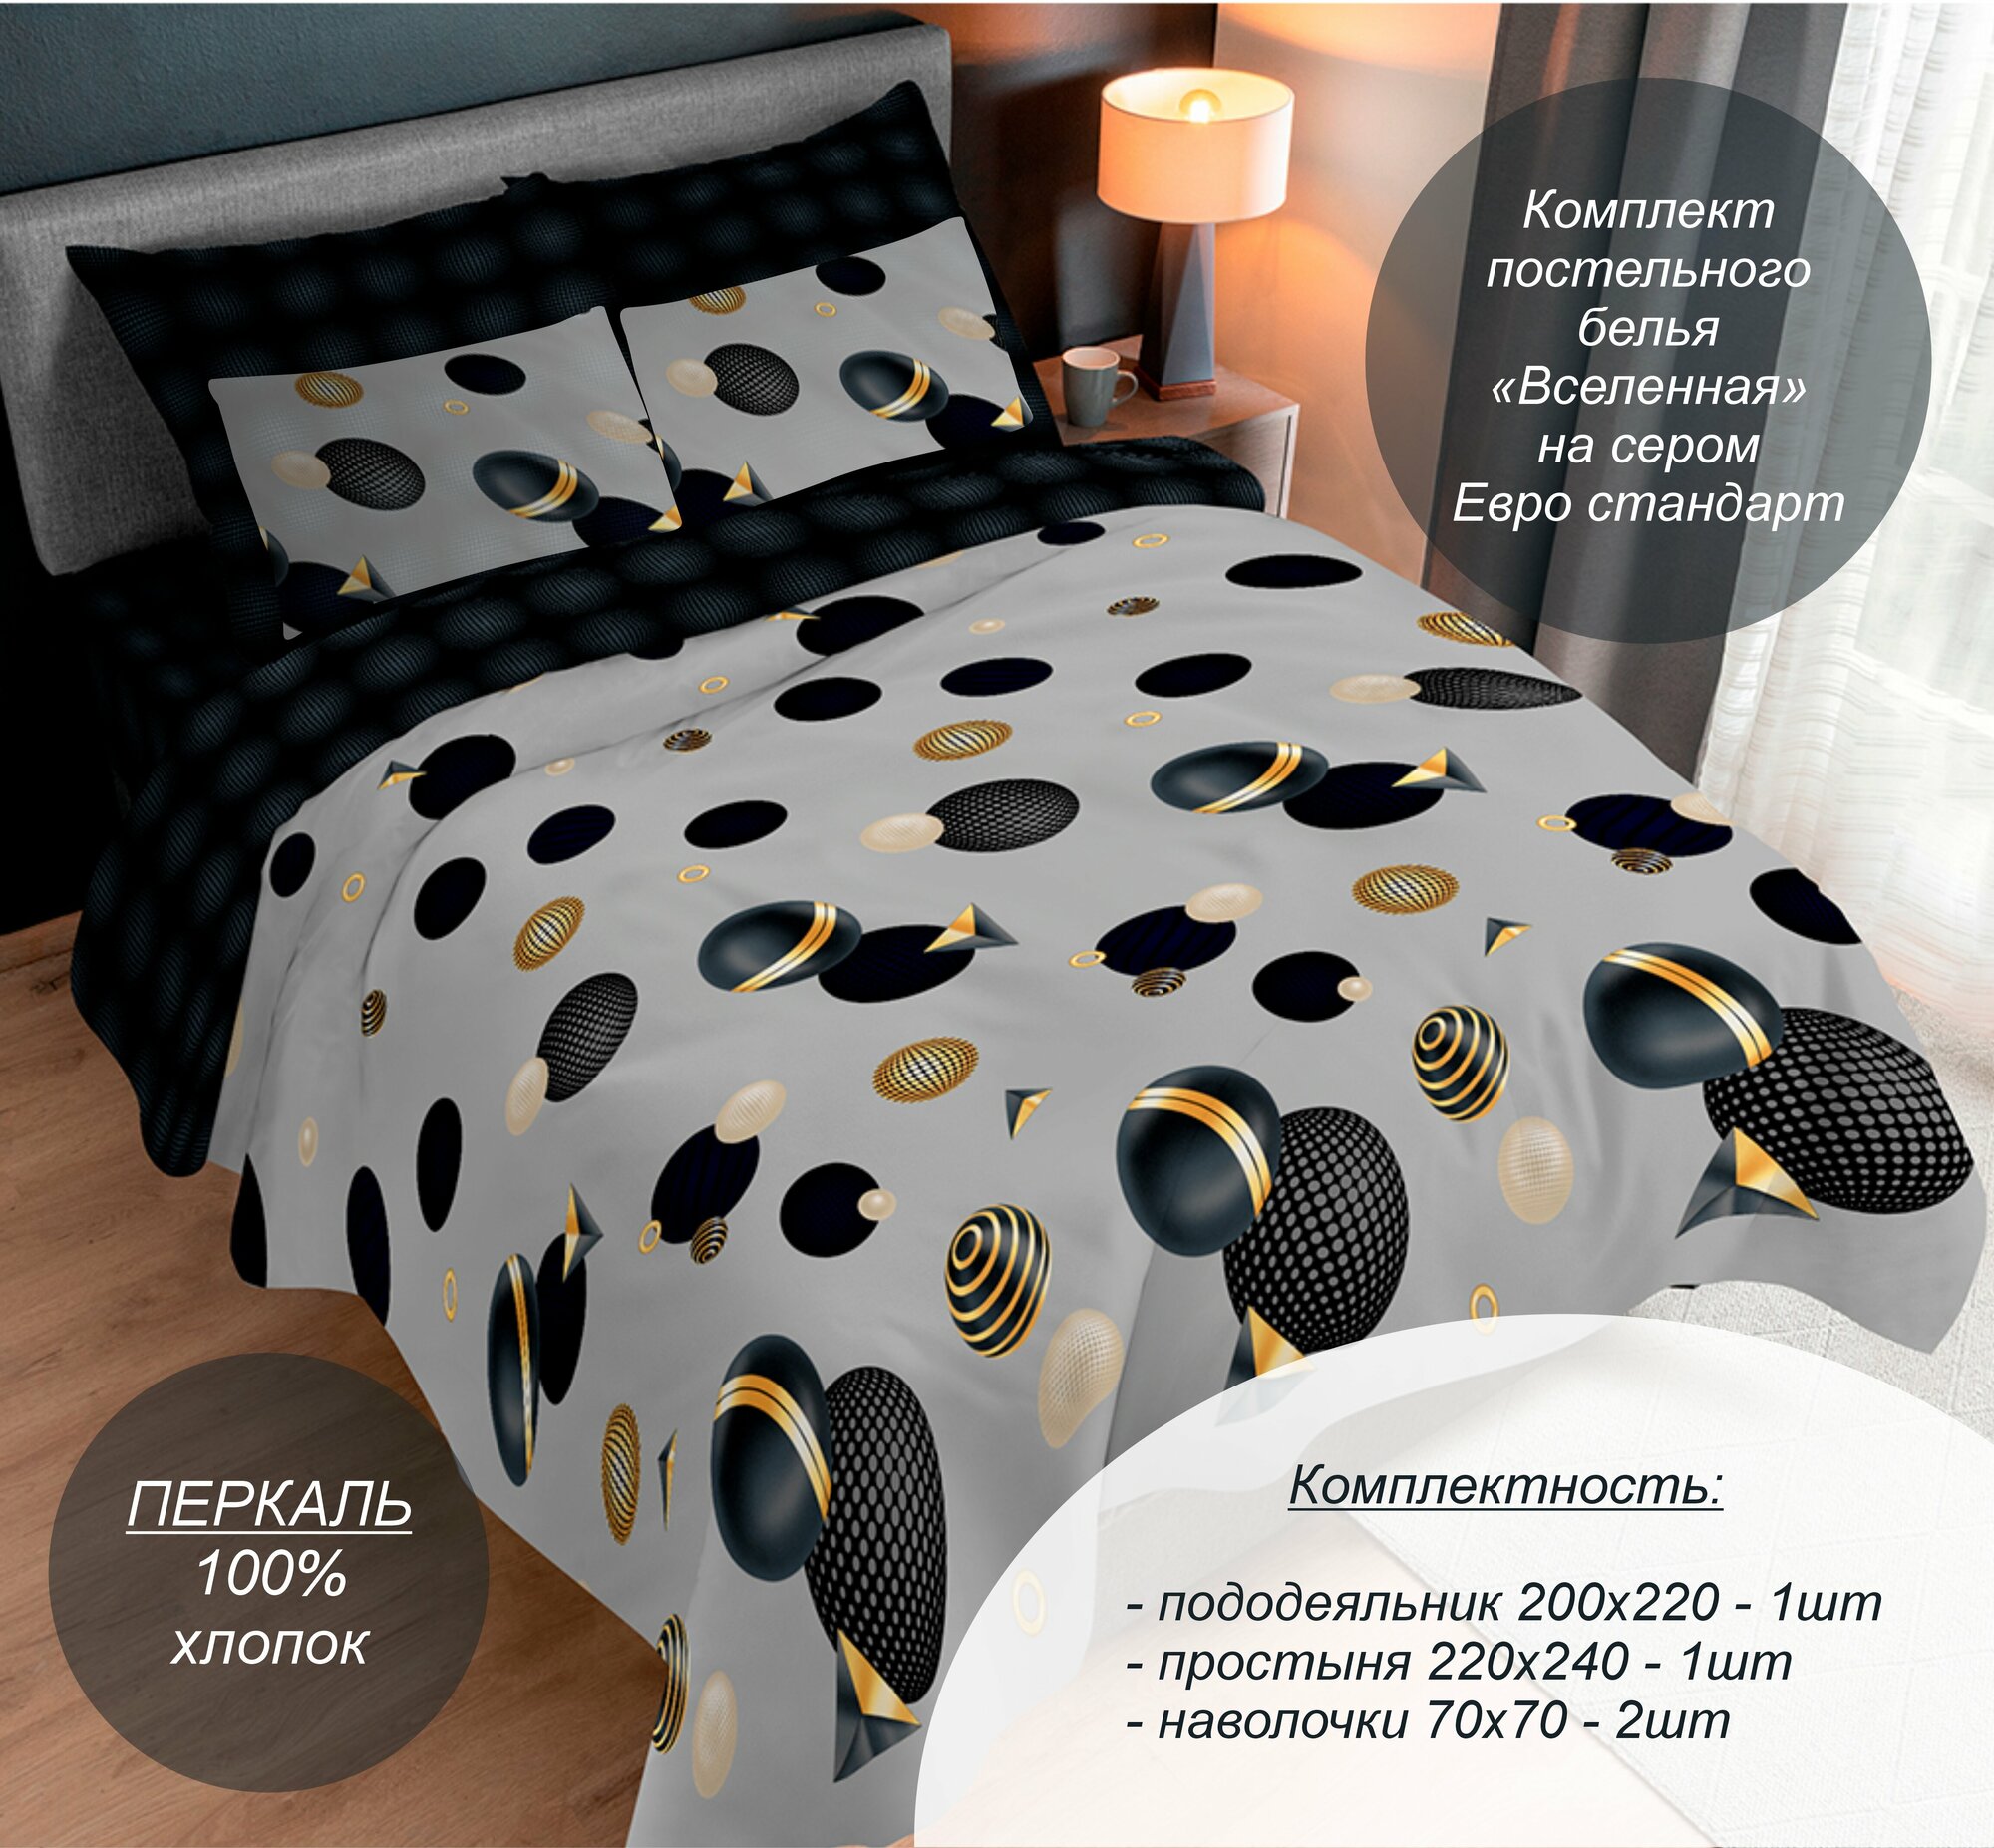 Комплект постельного белья "Вселенная на сером" Евро стандарт (Перкаль, 100% хлопок), наволочки 70х70